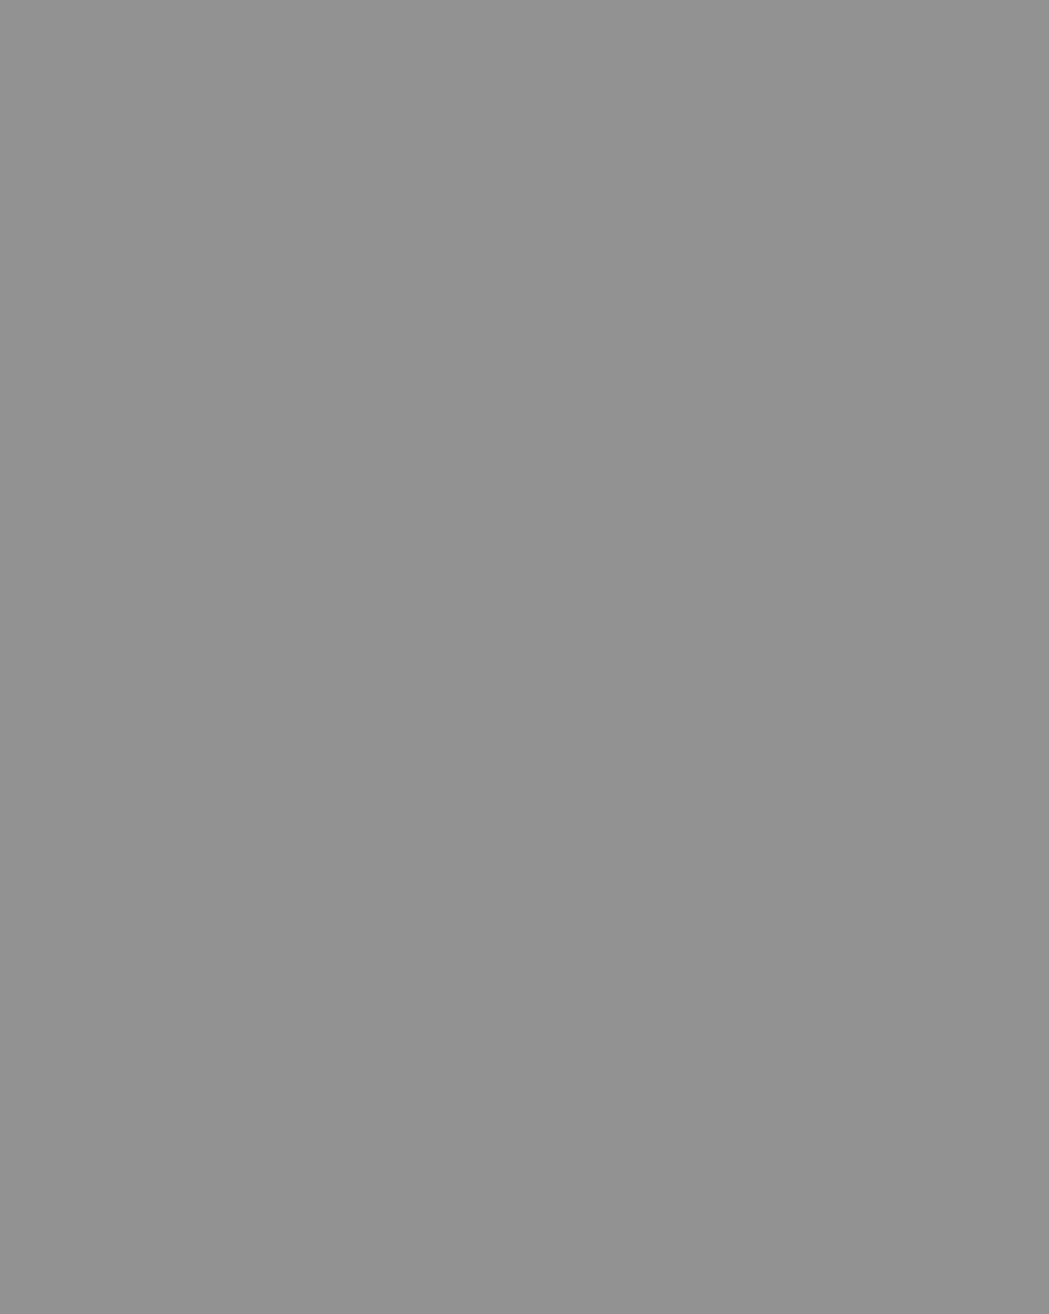 Марина Цветаева с мужем — публицистом Сергеем Эфроном. Коктебель, 1913 год. Фотография: Музейное объединение «Музеи наукограда Королев», Королев, Московская область